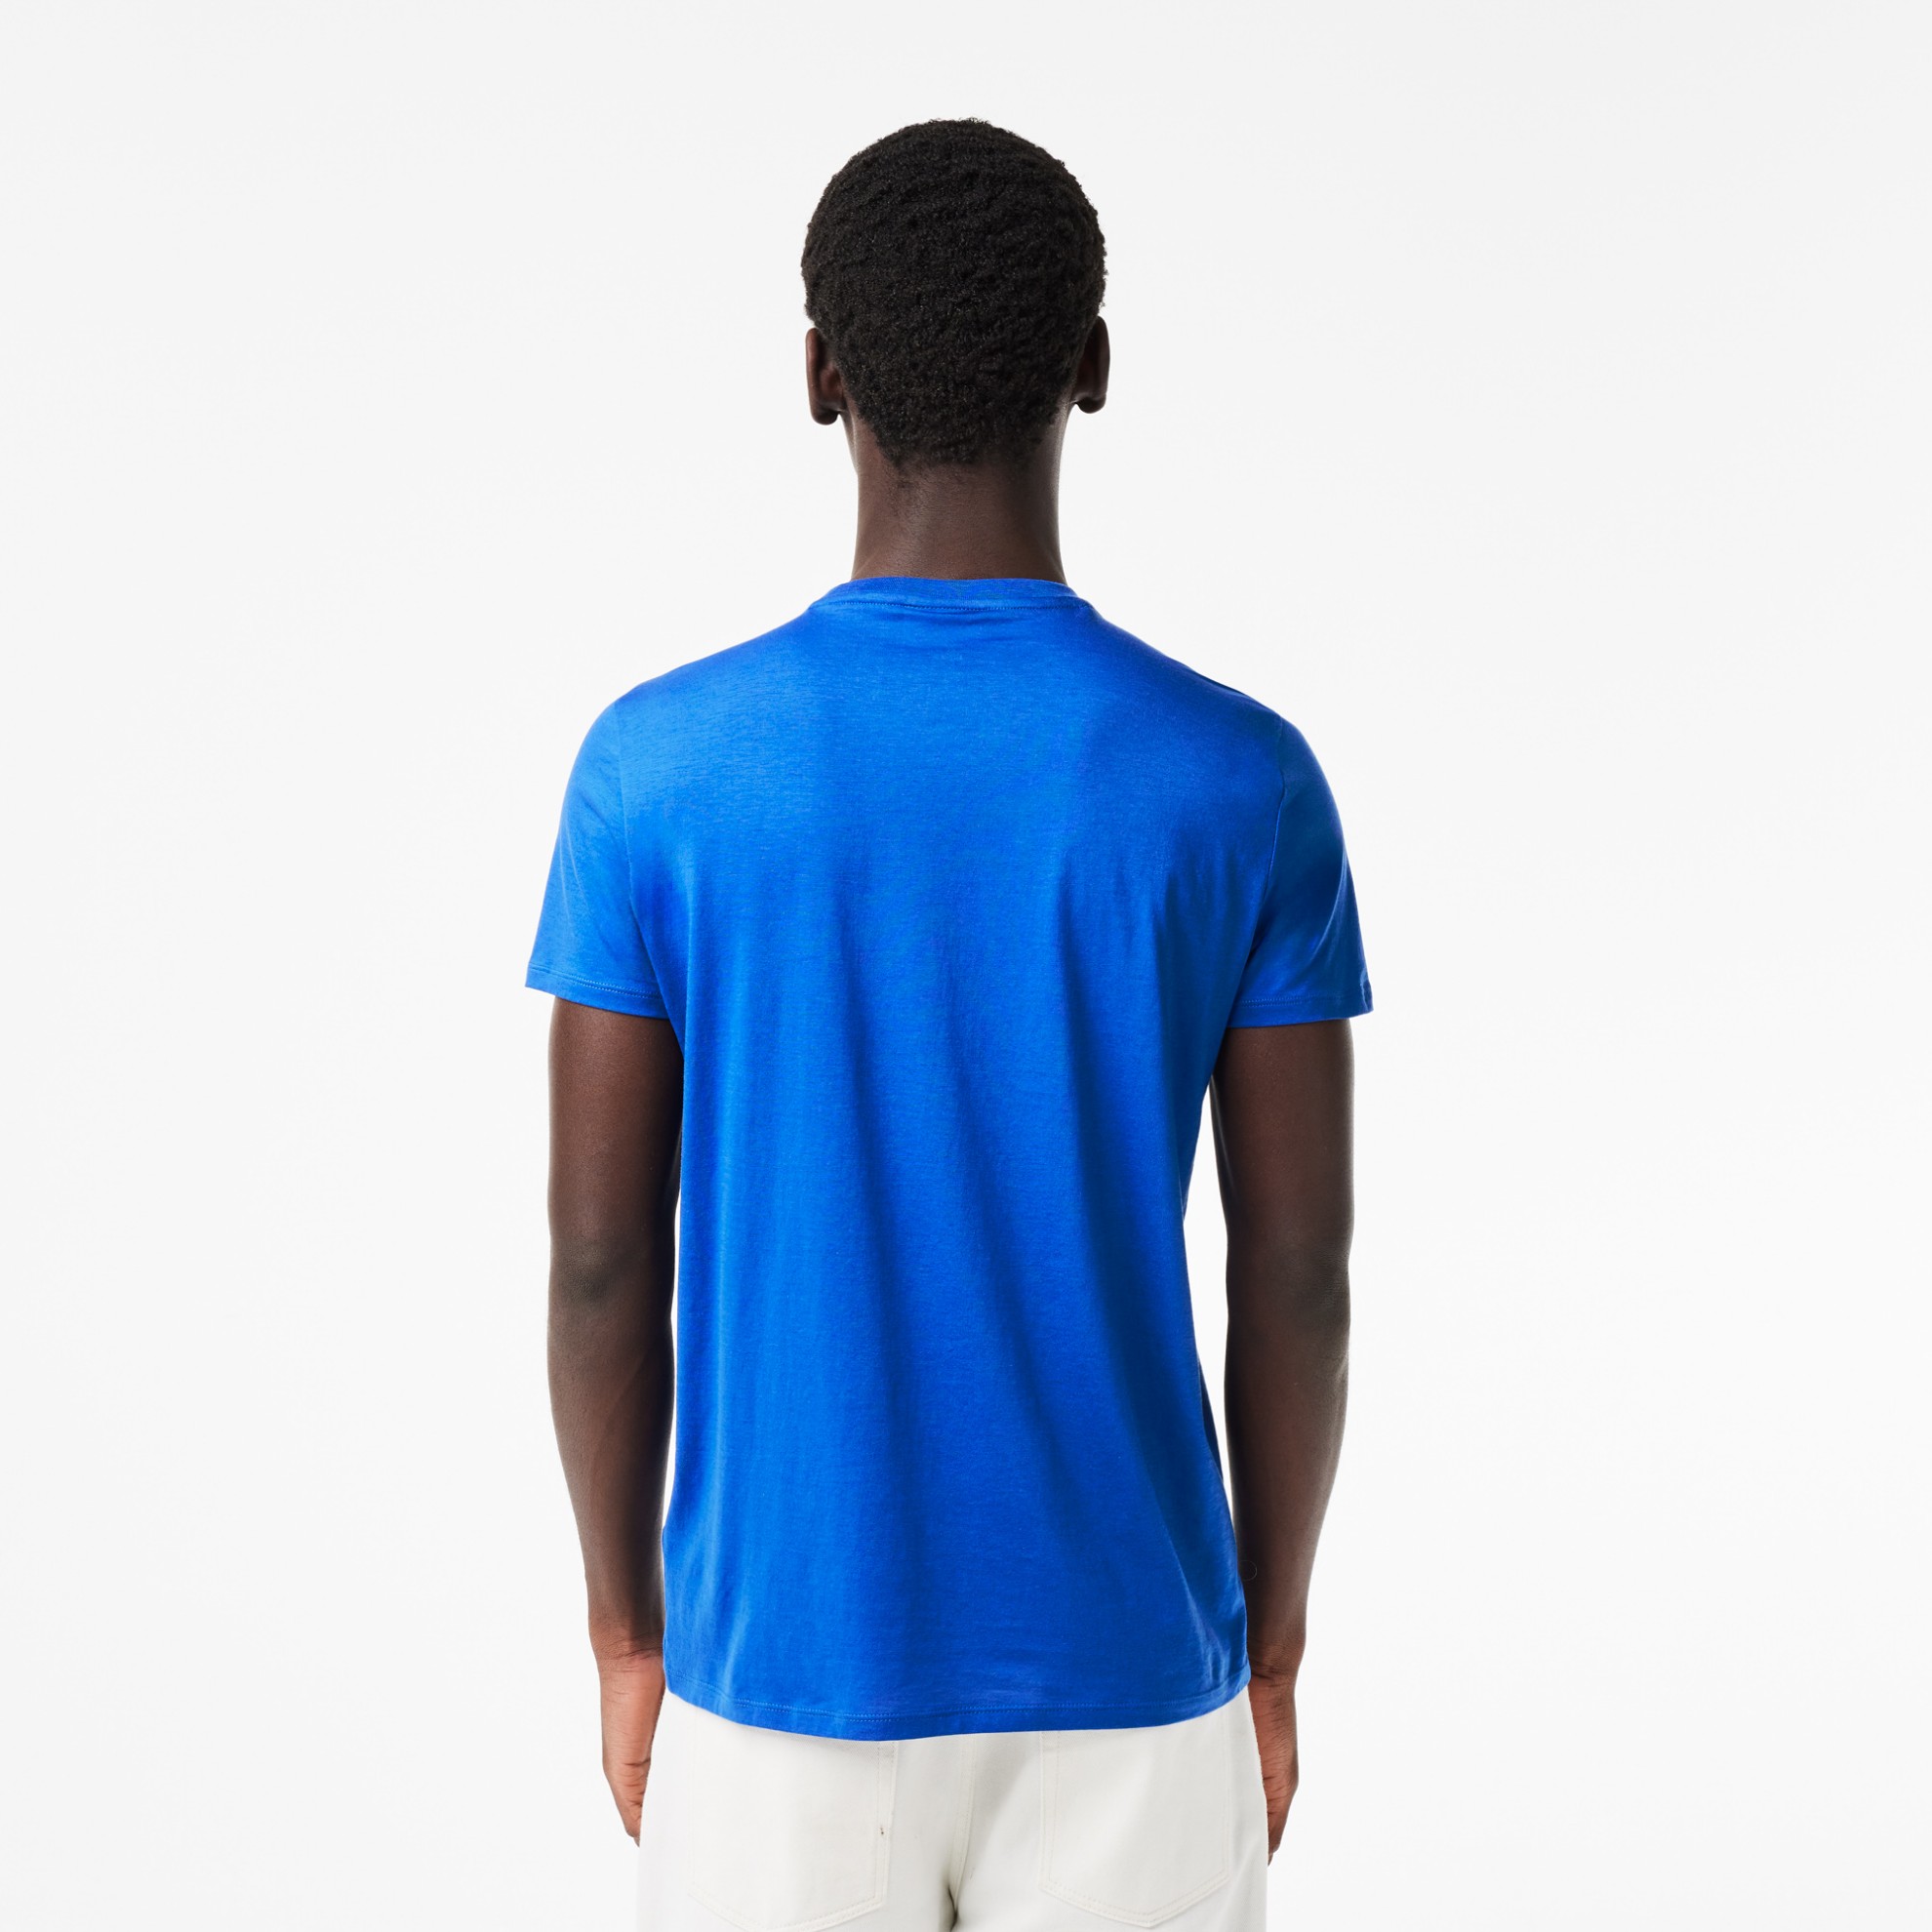 Εικόνα της Ανδρικό T-shirt Pima Cotton Jersey με Λαιμόκοψη